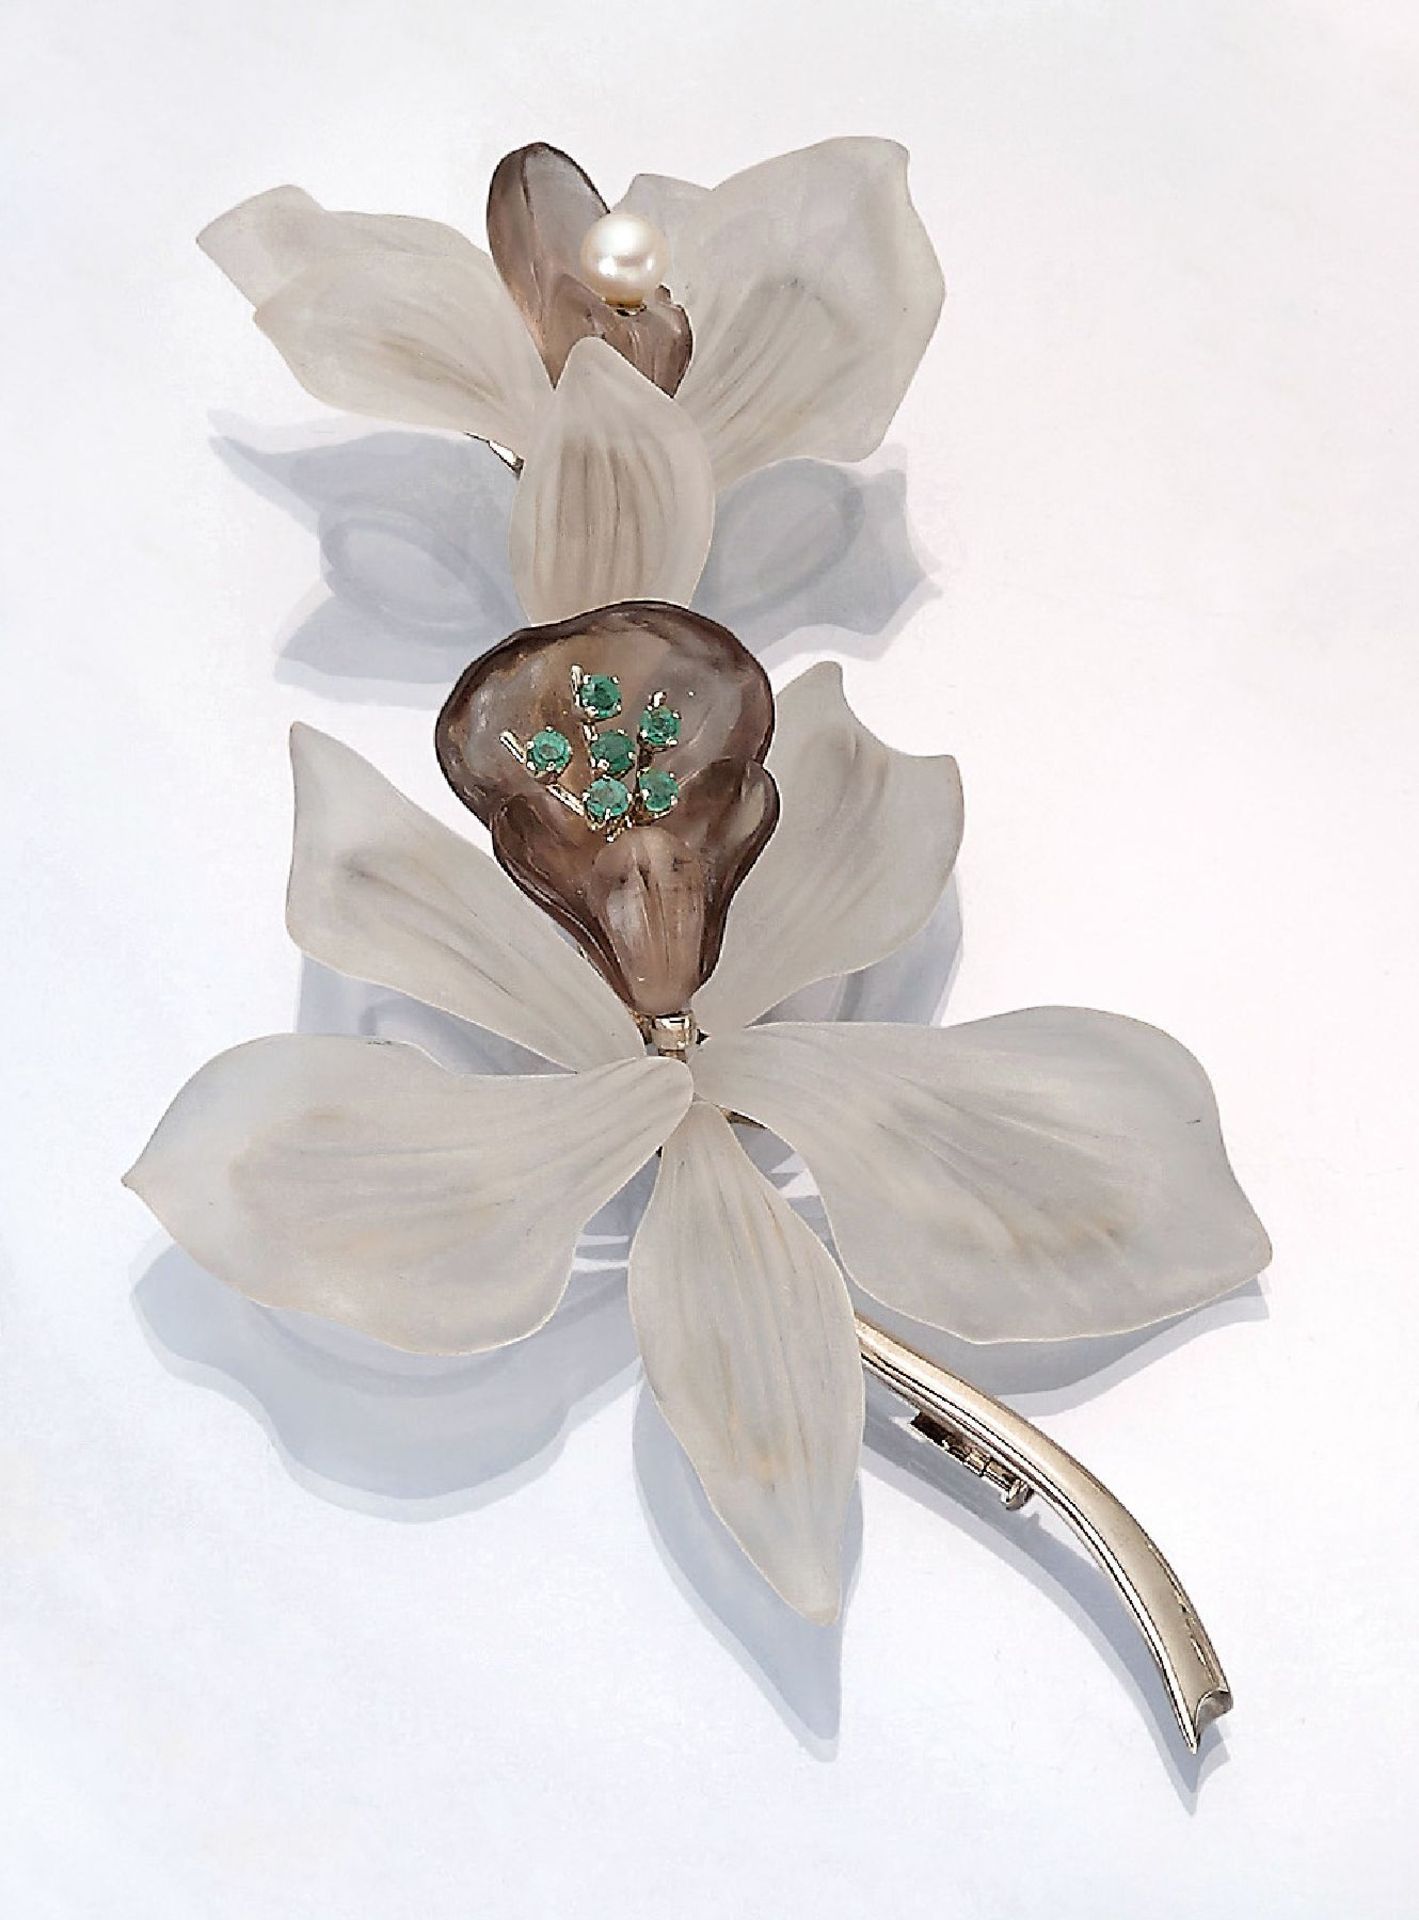 Ausgefallene 14 kt Gold Brosche "Orchidee" mitBergkristall, Rauchquarz, Perlchen und Smaragden, Wien